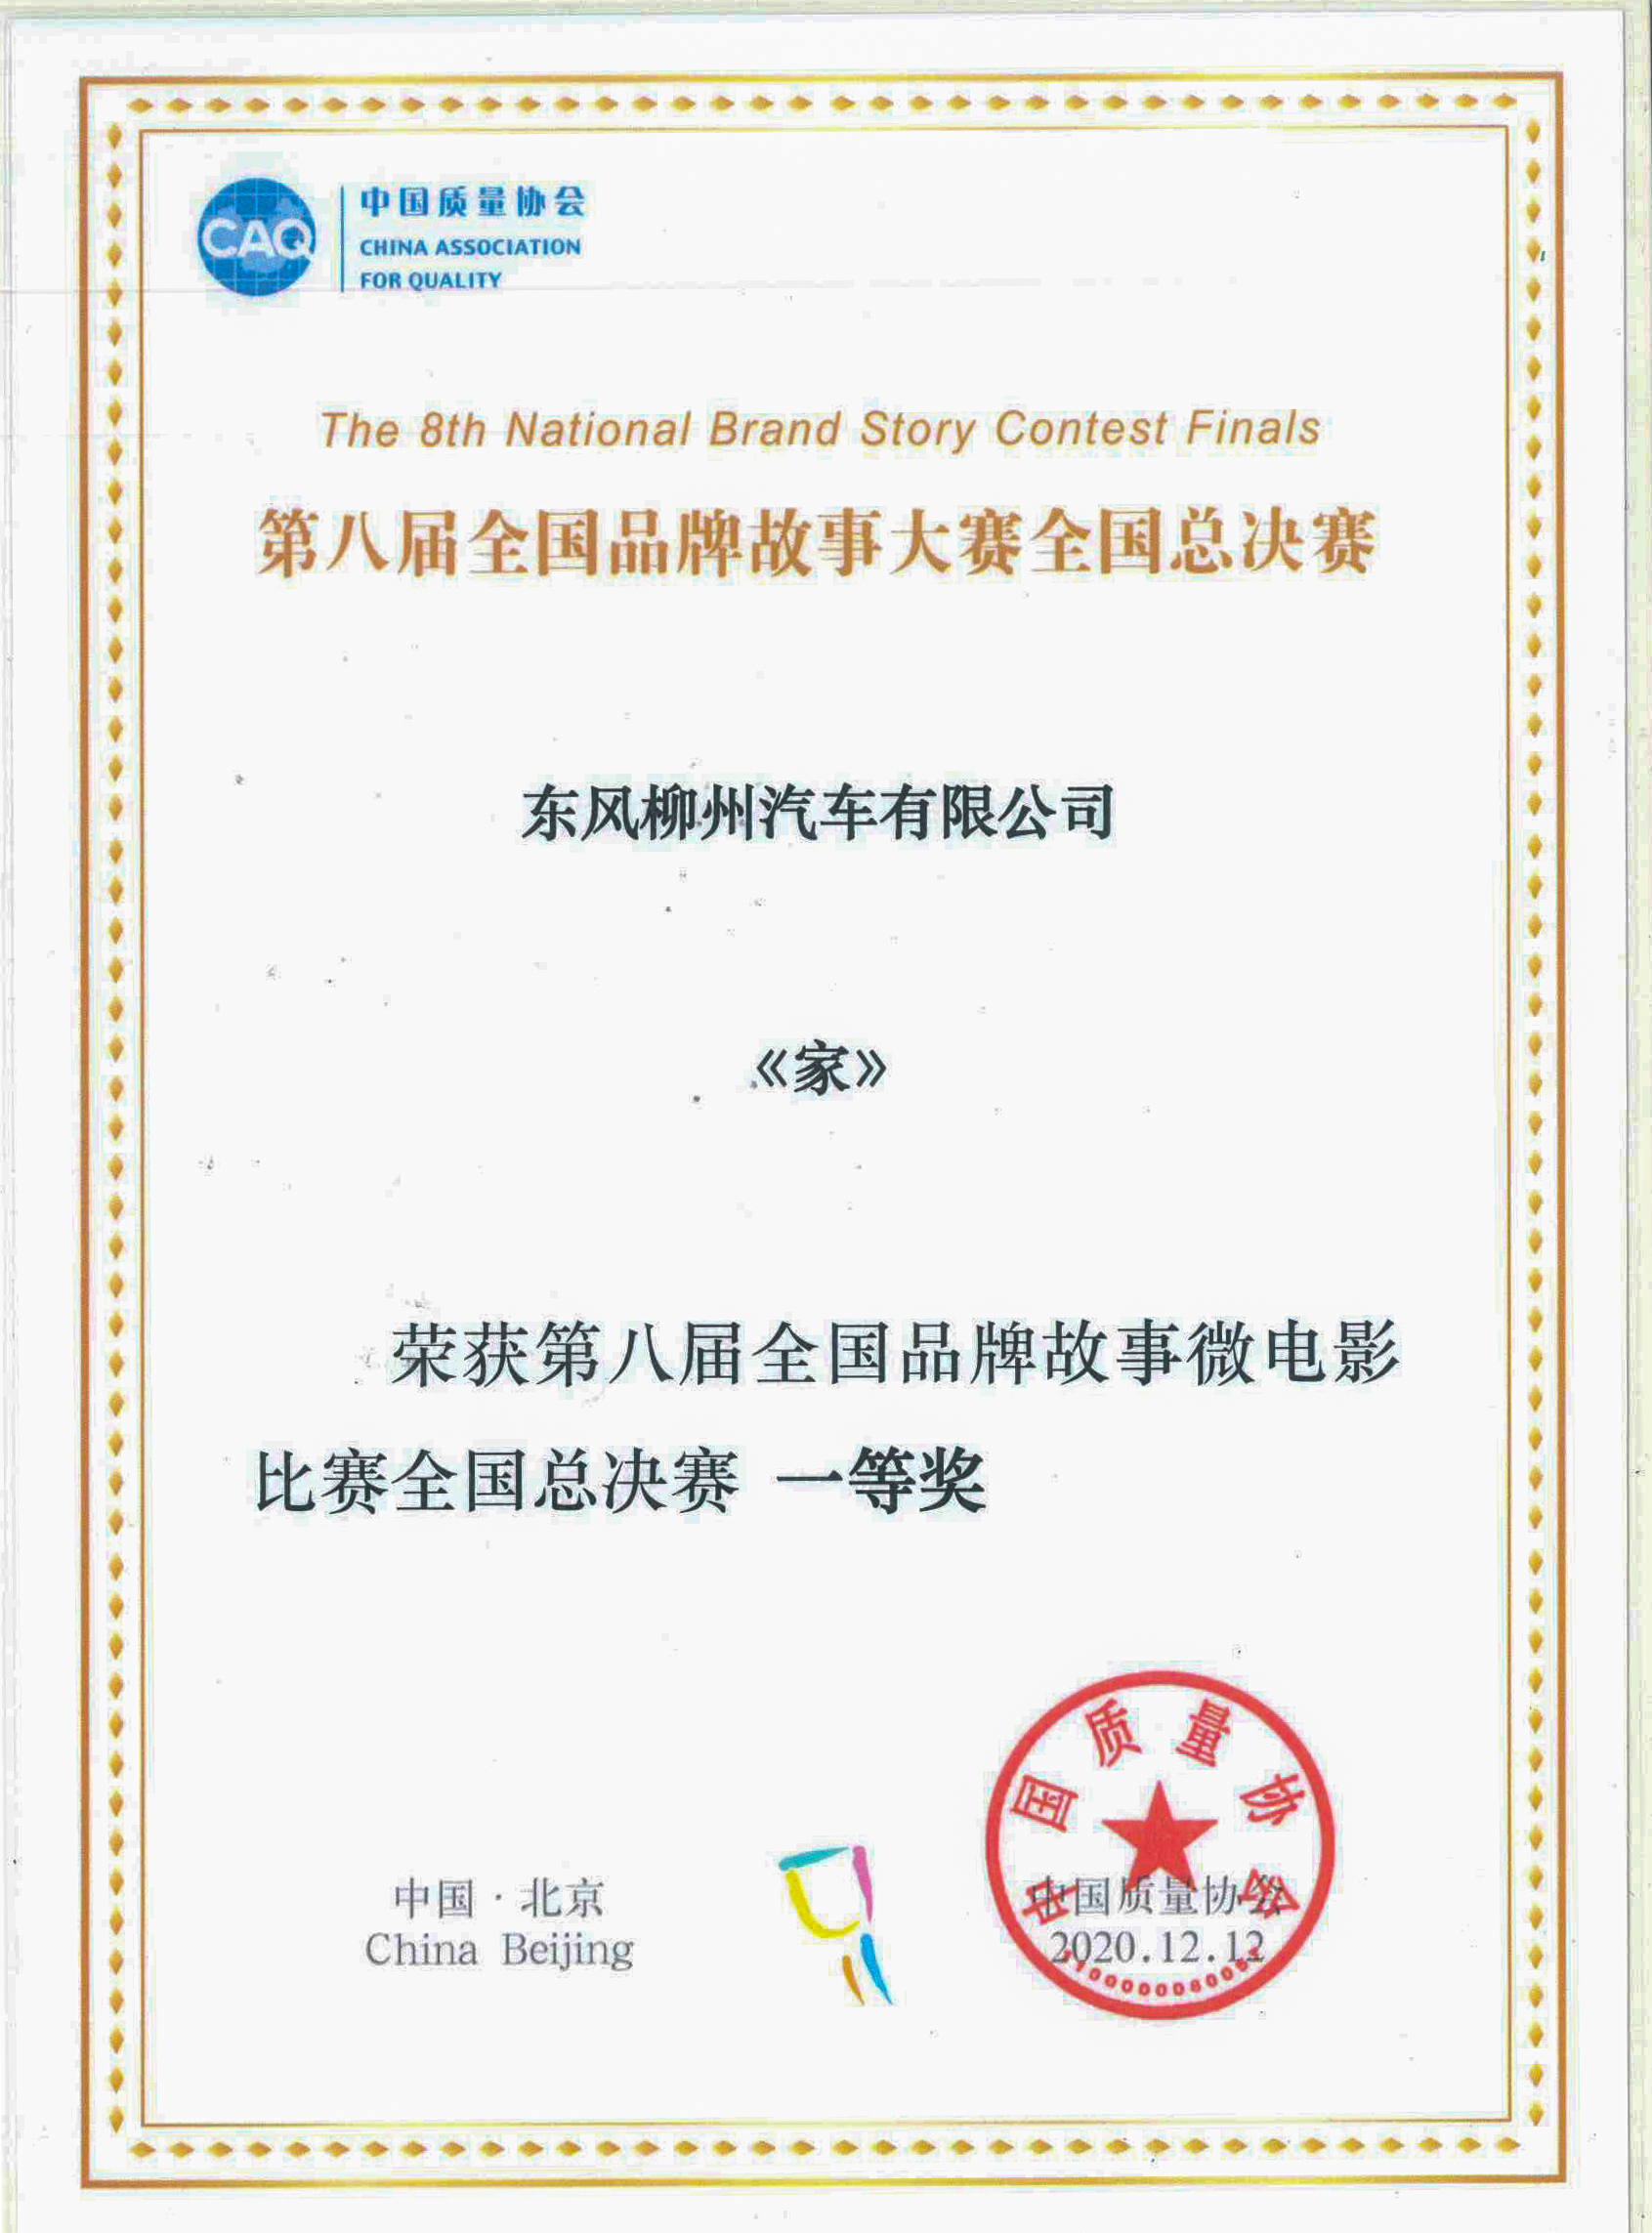 中国质量协会——第八届全国品牌故事微电影比赛全国总决赛一等奖